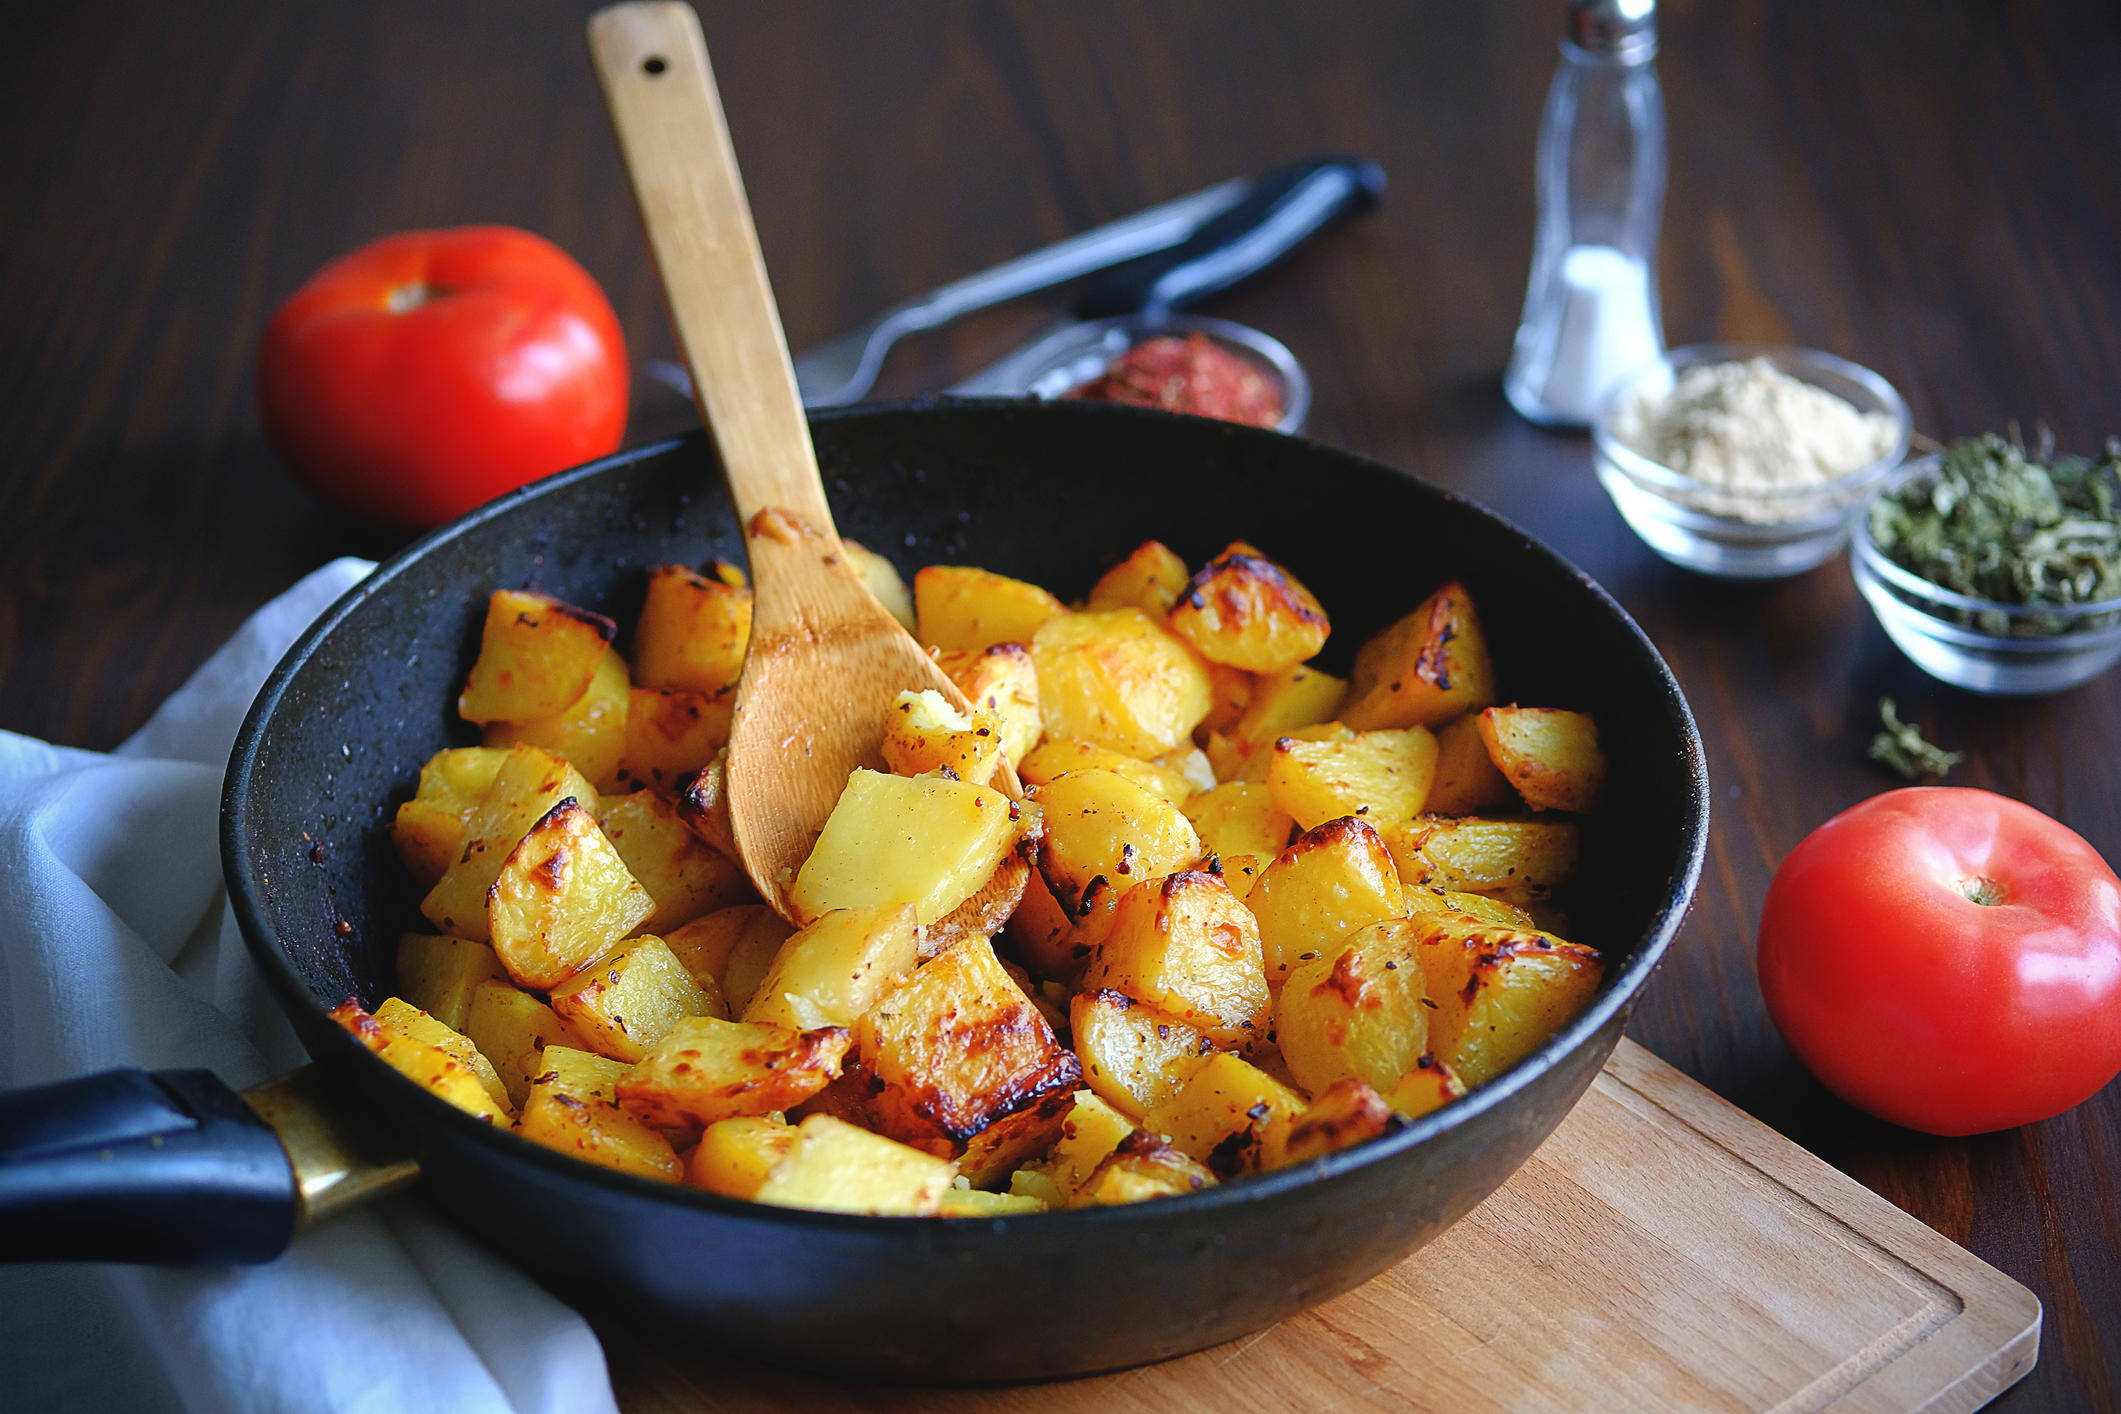 Batata frita pode ser mais benéfica que a cozida, diz estudo